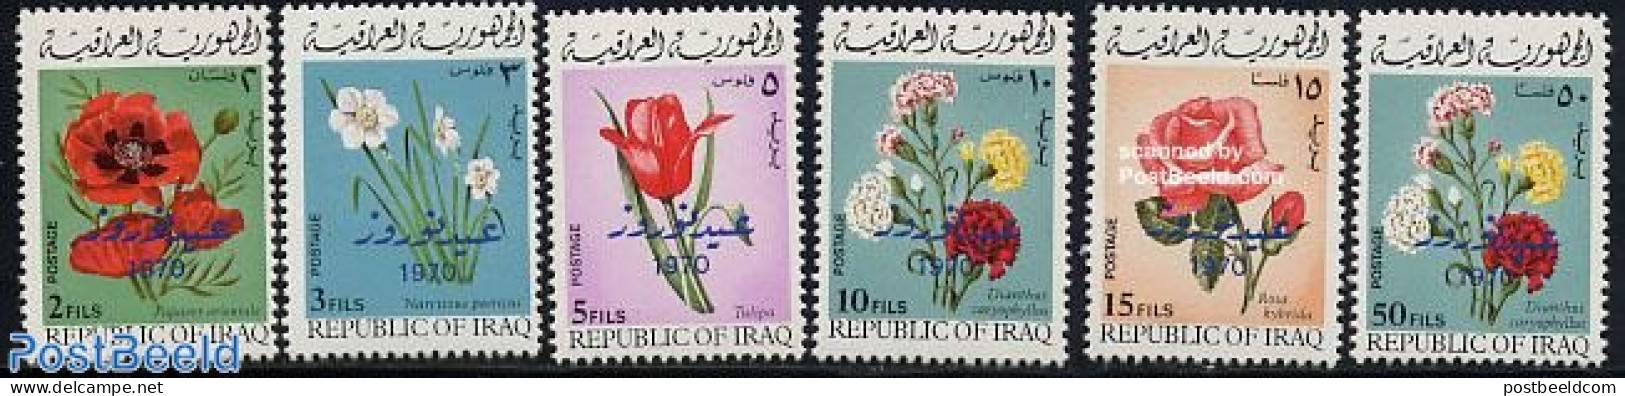 Iraq 1970 Kurdic New Year, Flowers 6v, Mint NH, Nature - Flowers & Plants - Iraq